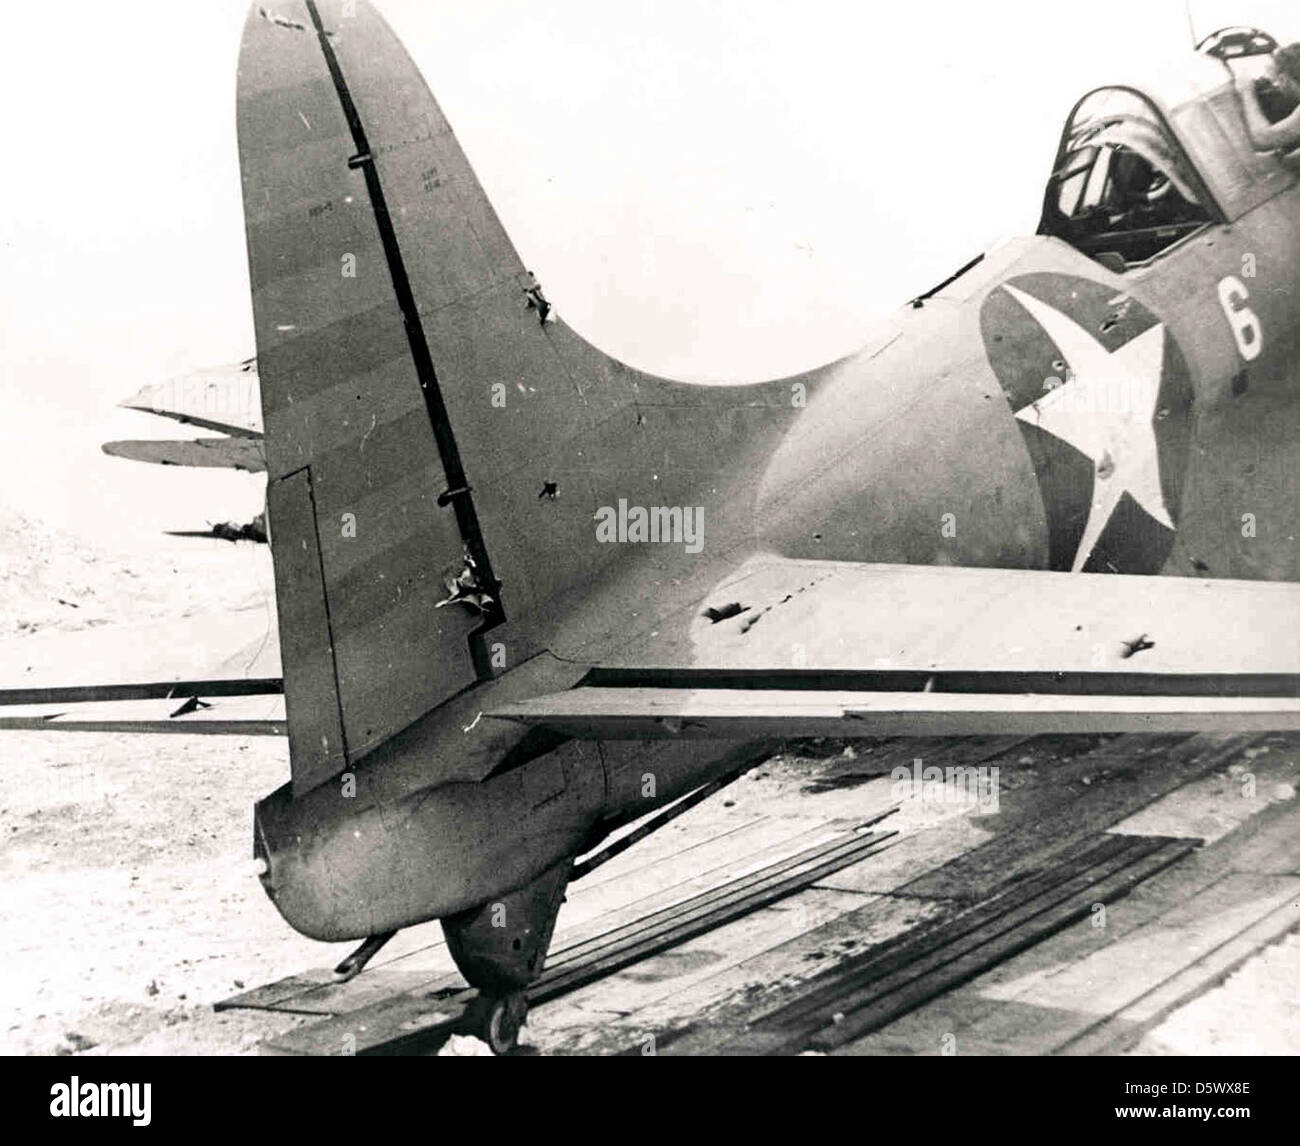 Vue de la queue de douglas sbd-2 'dauntless' montrant les dégâts de combat infligées pendant la bataille de Midway. Cette photo a été prise sur l'atoll de Midway. Banque D'Images